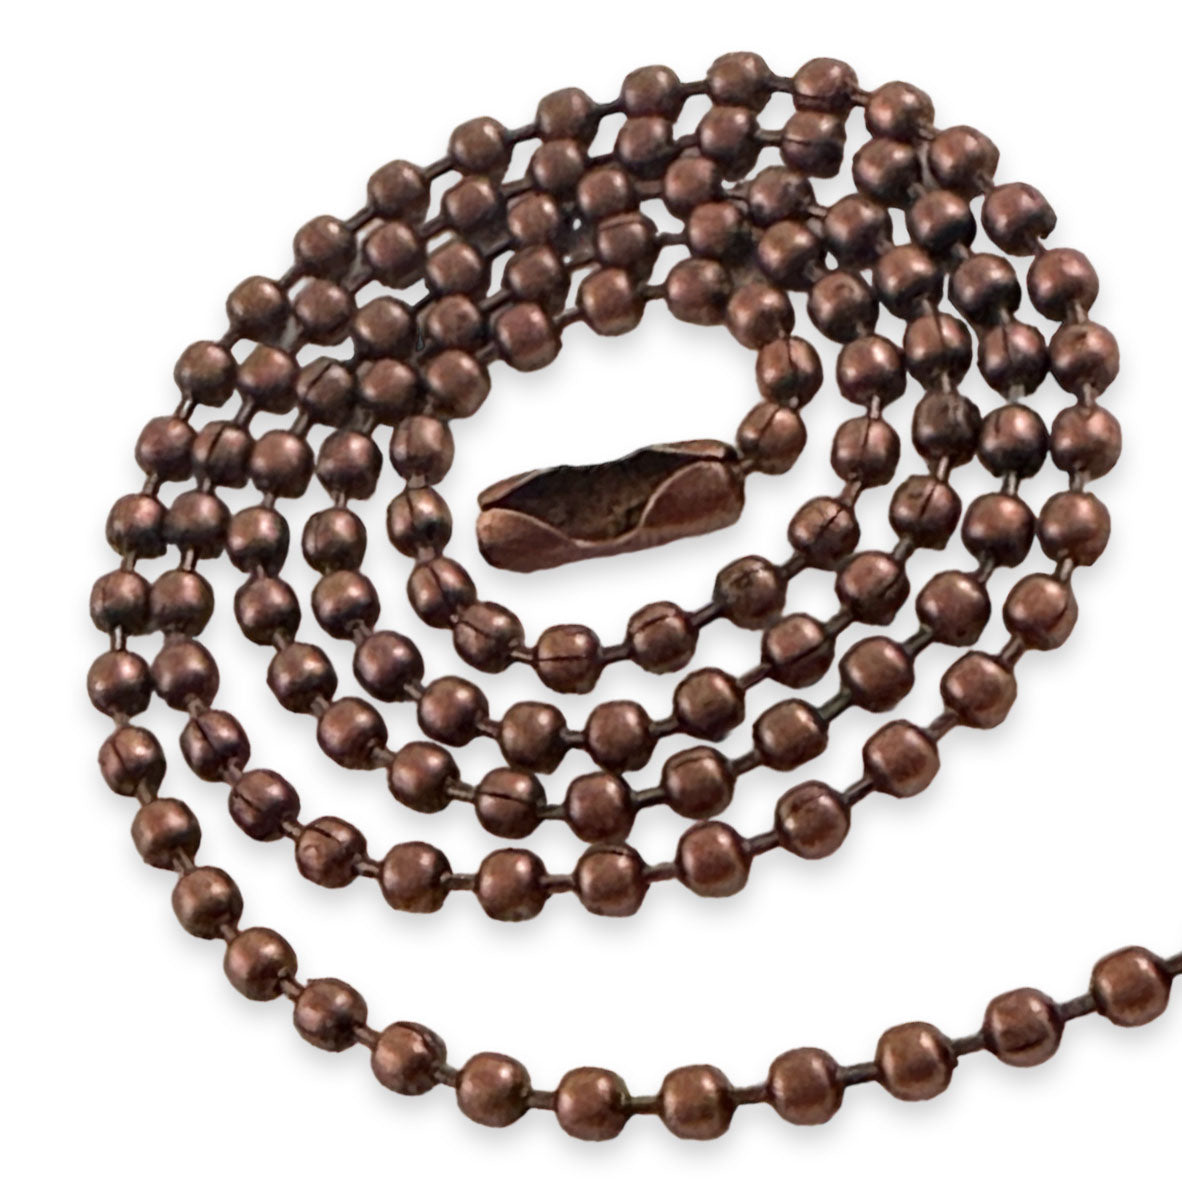 Bulk Antique Copper Ball Chain Necklaces 24" - Select Quantity